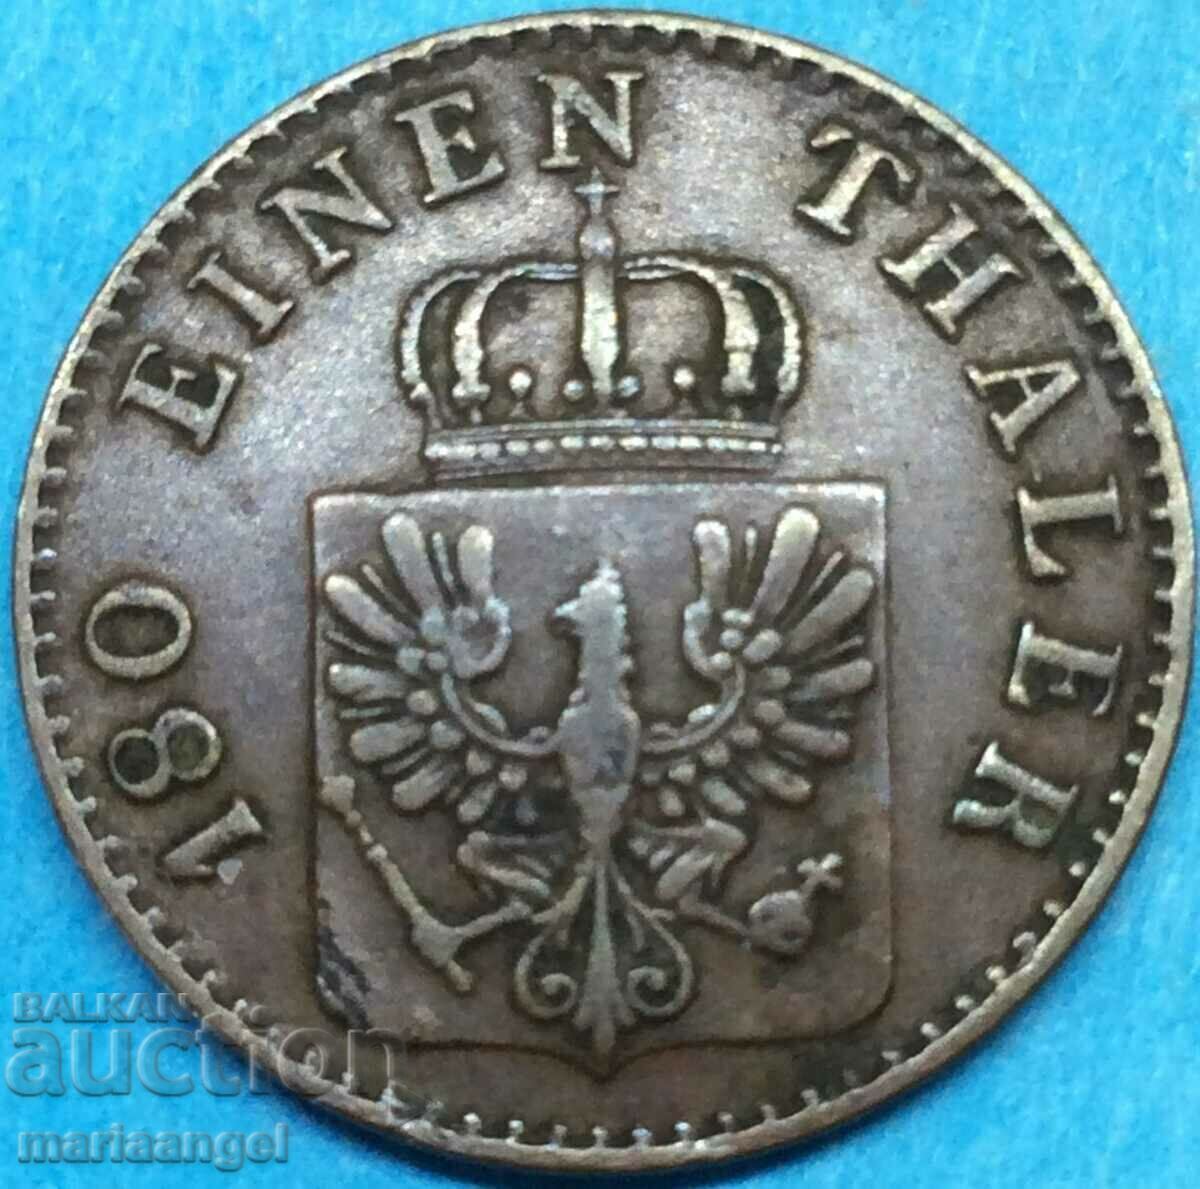 2 Pfennig 1867 Prussia Germany